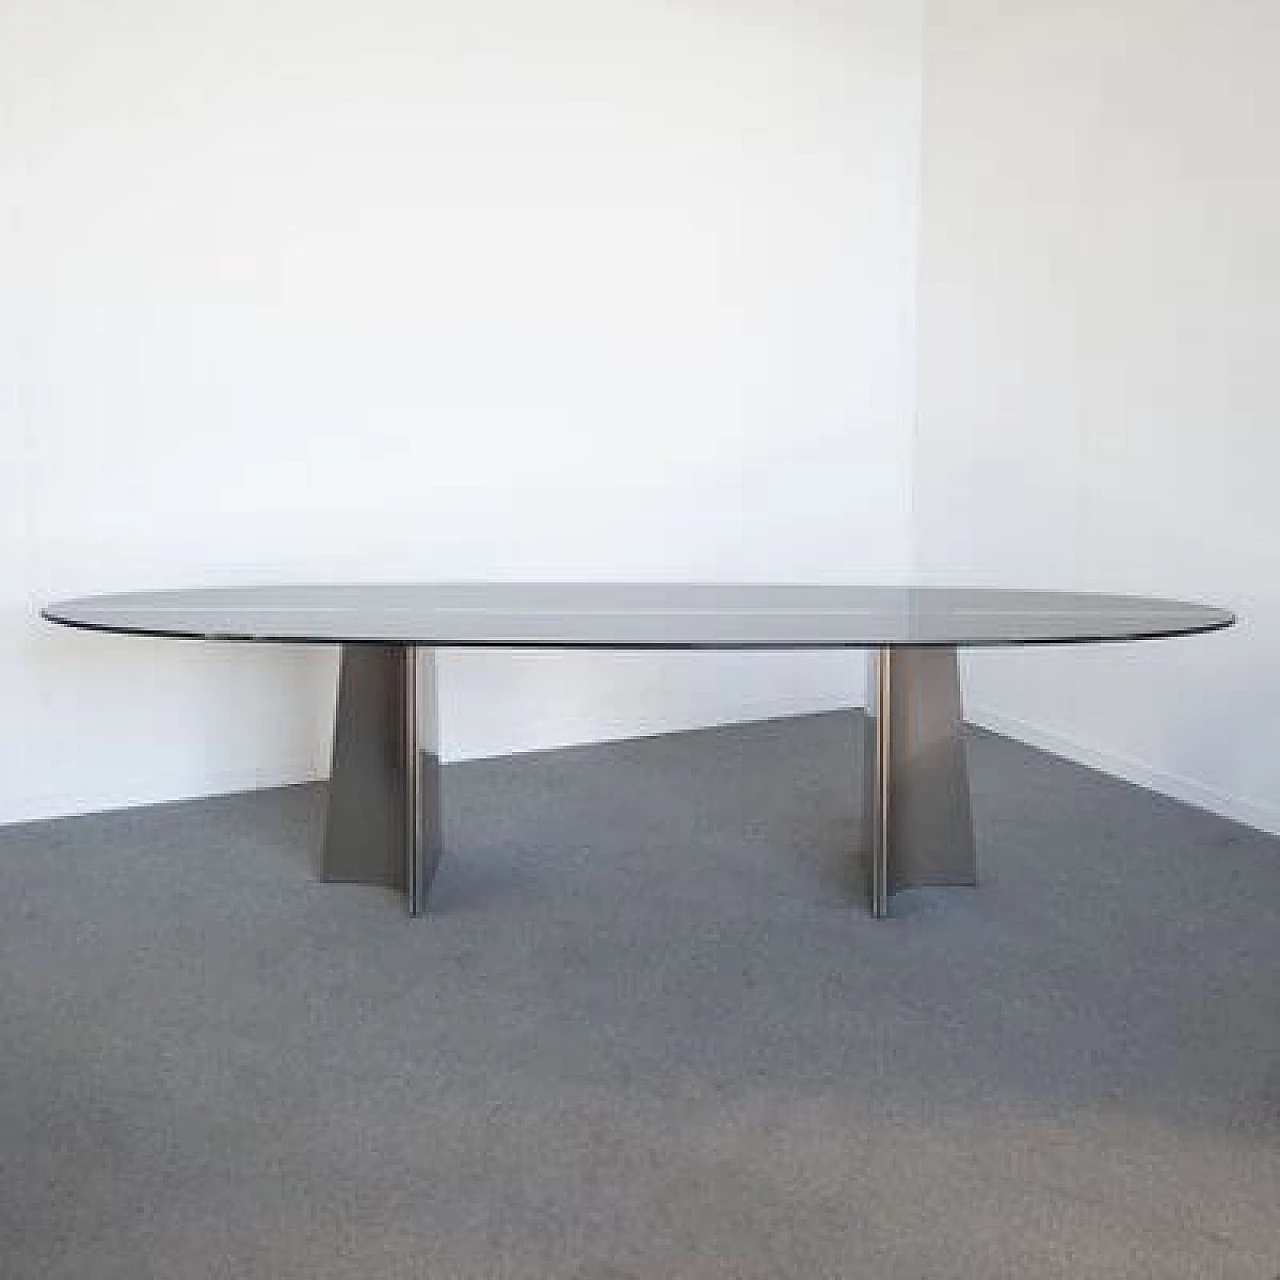 Curved aluminium table by Luigi Saccardo for Armet, 1970s 1481331